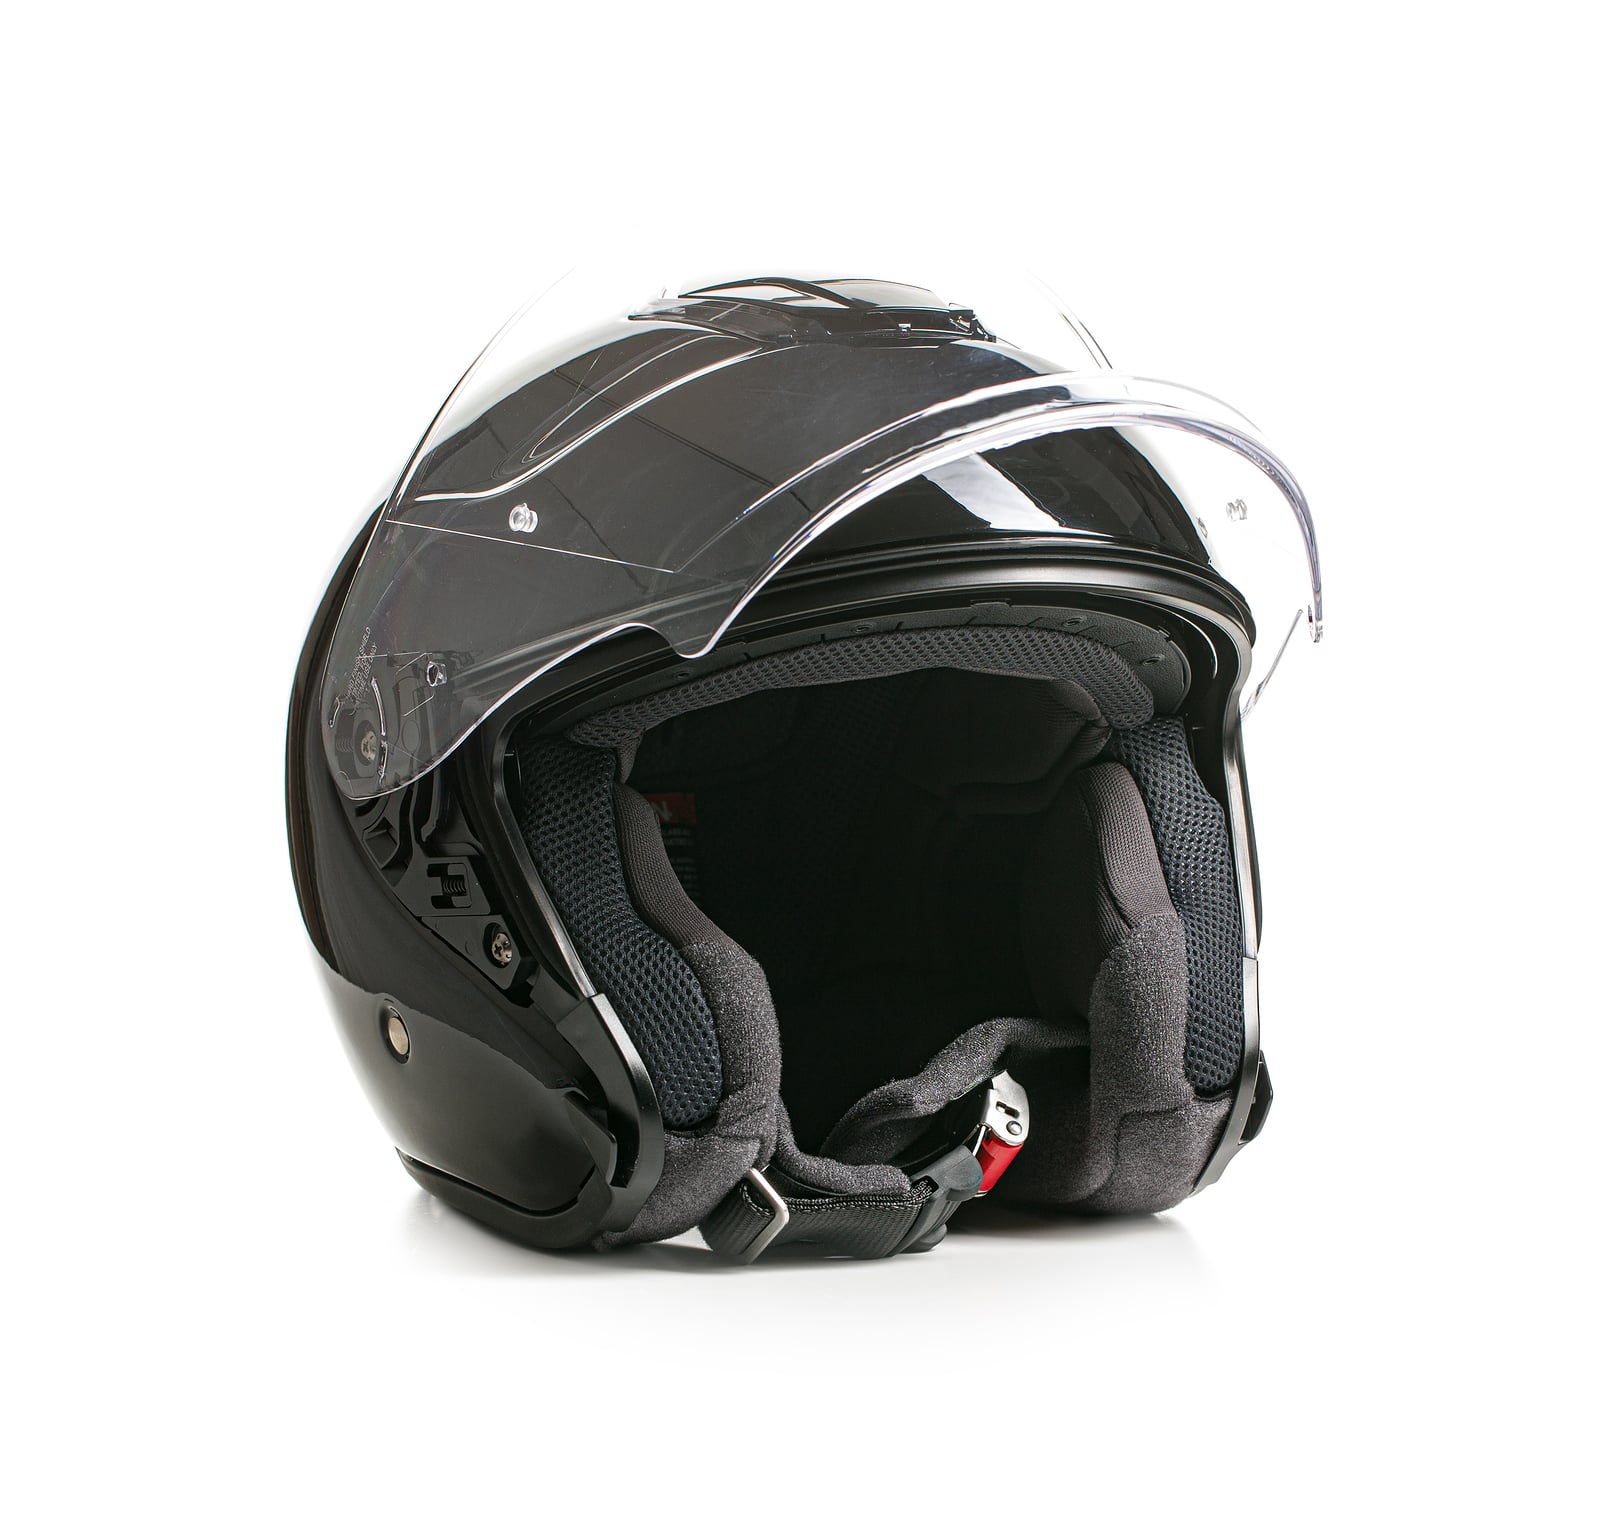 Illinois motorycle Helmet Laws